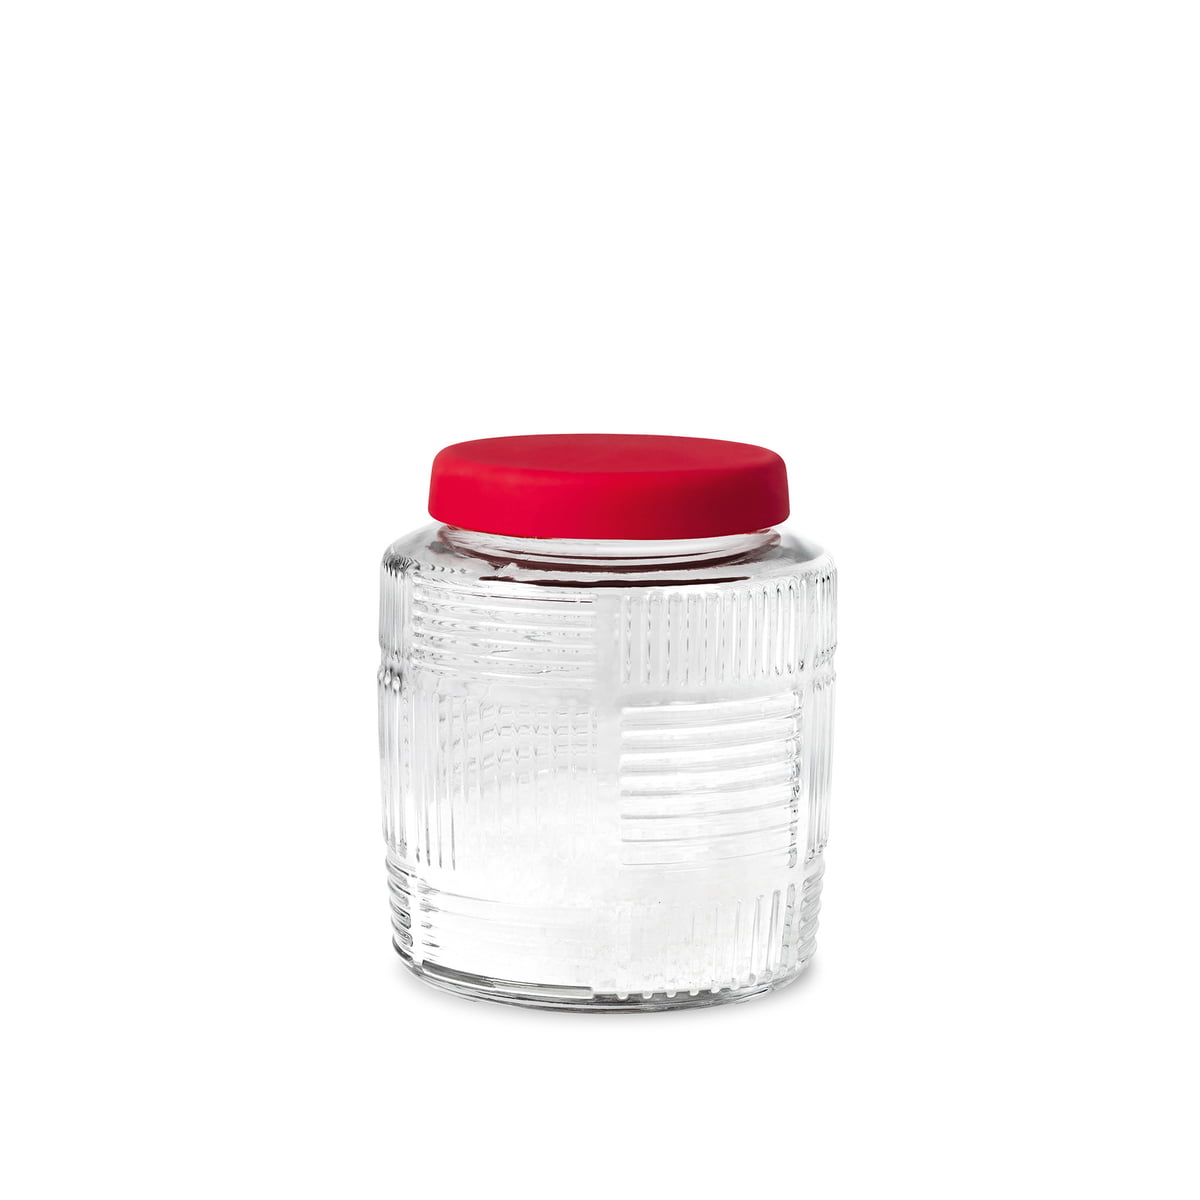 Storage Jar - Red lid, 0.9l / 1 Qt.